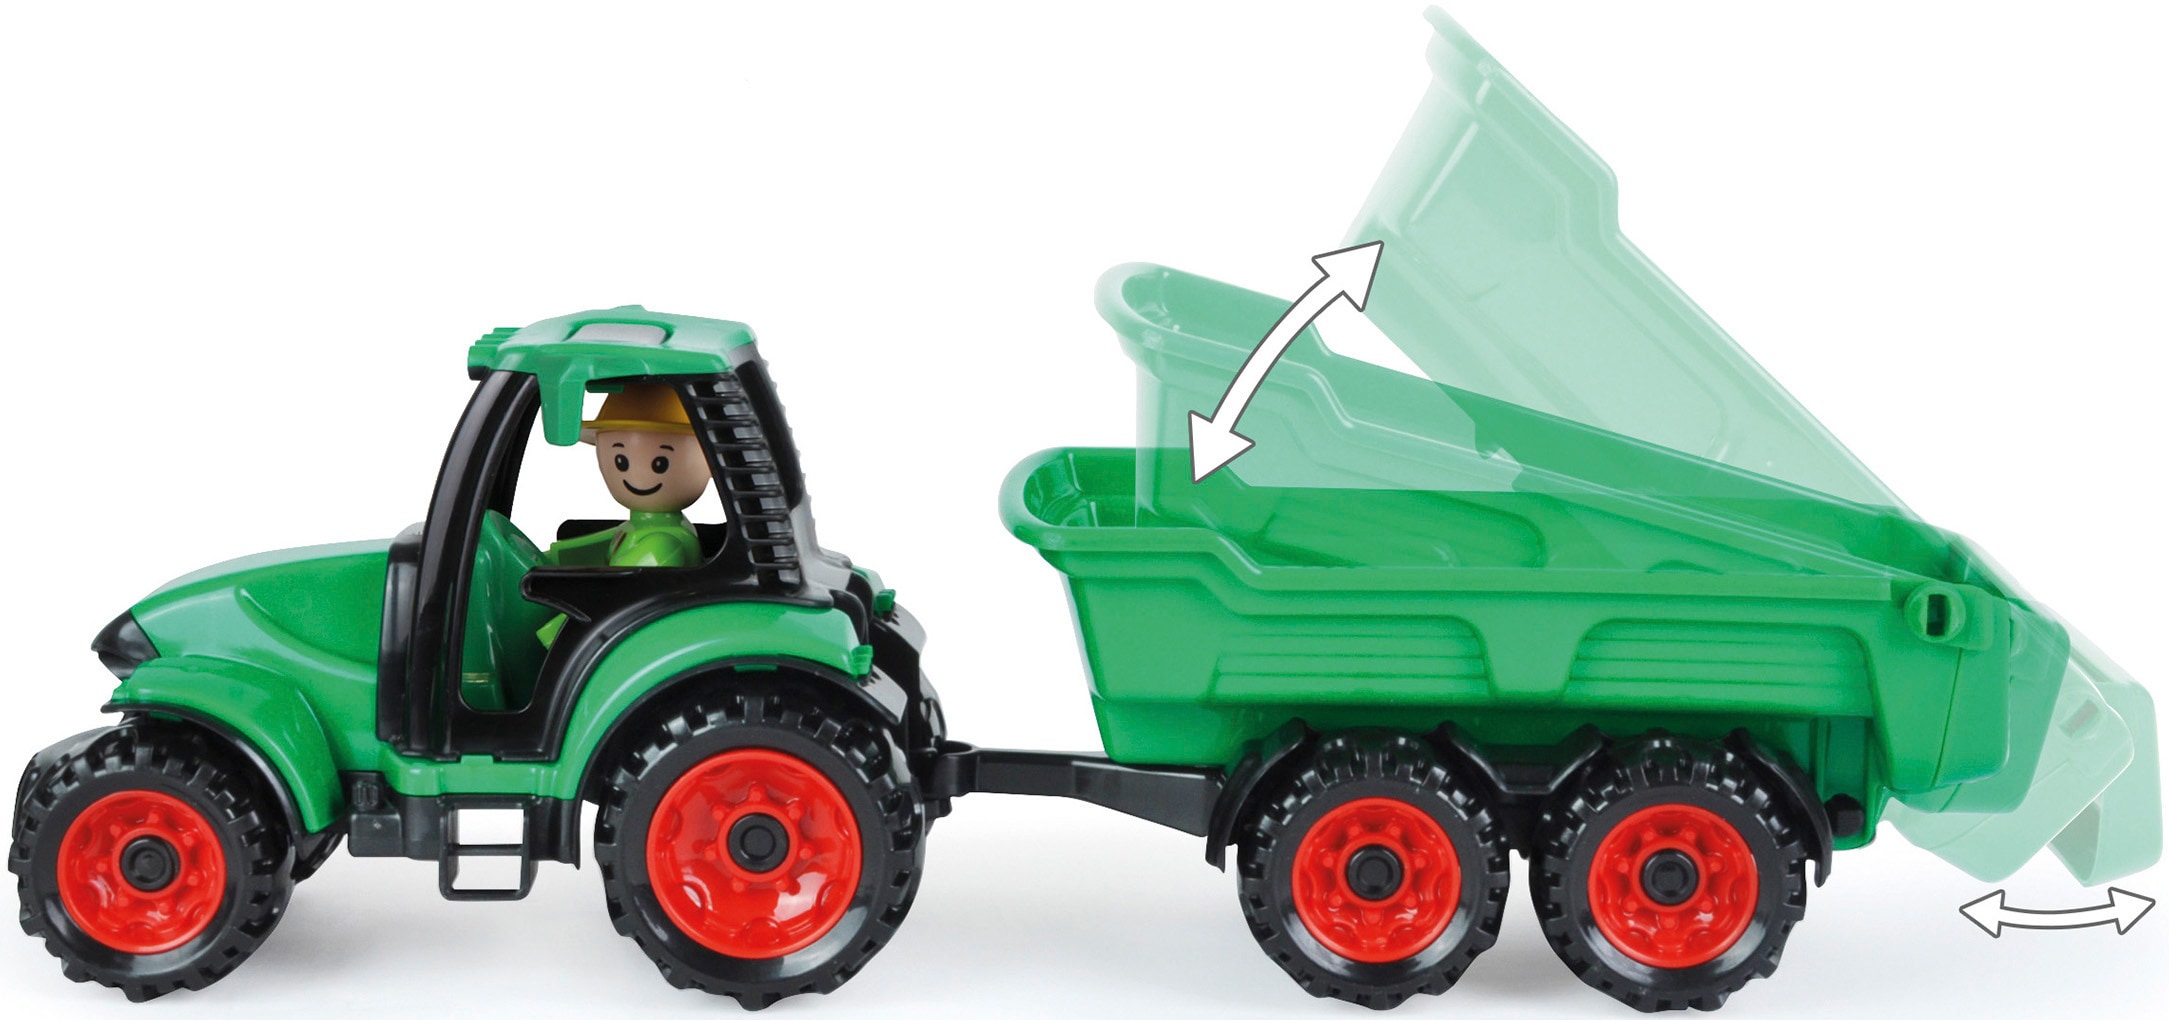 Lena® Spielzeug-Traktor »Truckies Set Bauernhof«, inkluisve Schaufellader und Spielfigur; Made in Europe